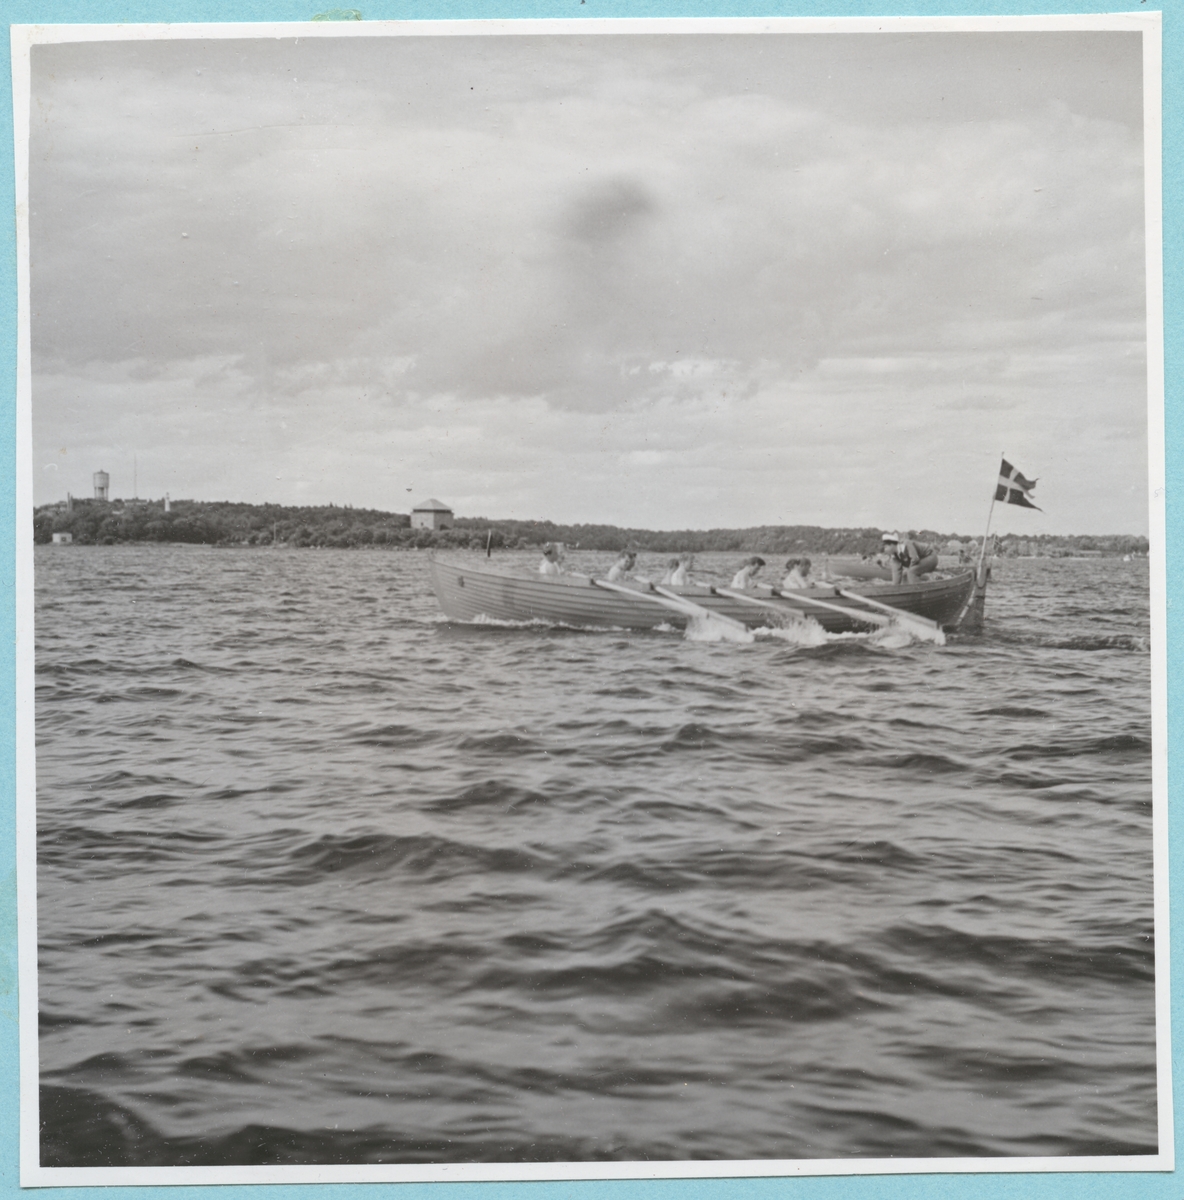 Roddtävling mellan Danska, Norska och Svenska kadettlagen. Från Danska och Norska örlogsbesöken den 29/6 - 4/7 1951. Flera män sitter i en roddbåt och ror. I aktern av båten sitter en flagga. I bakgrunden syns Mjölnareholmen med kruthuset och Wämö med vattentornet.